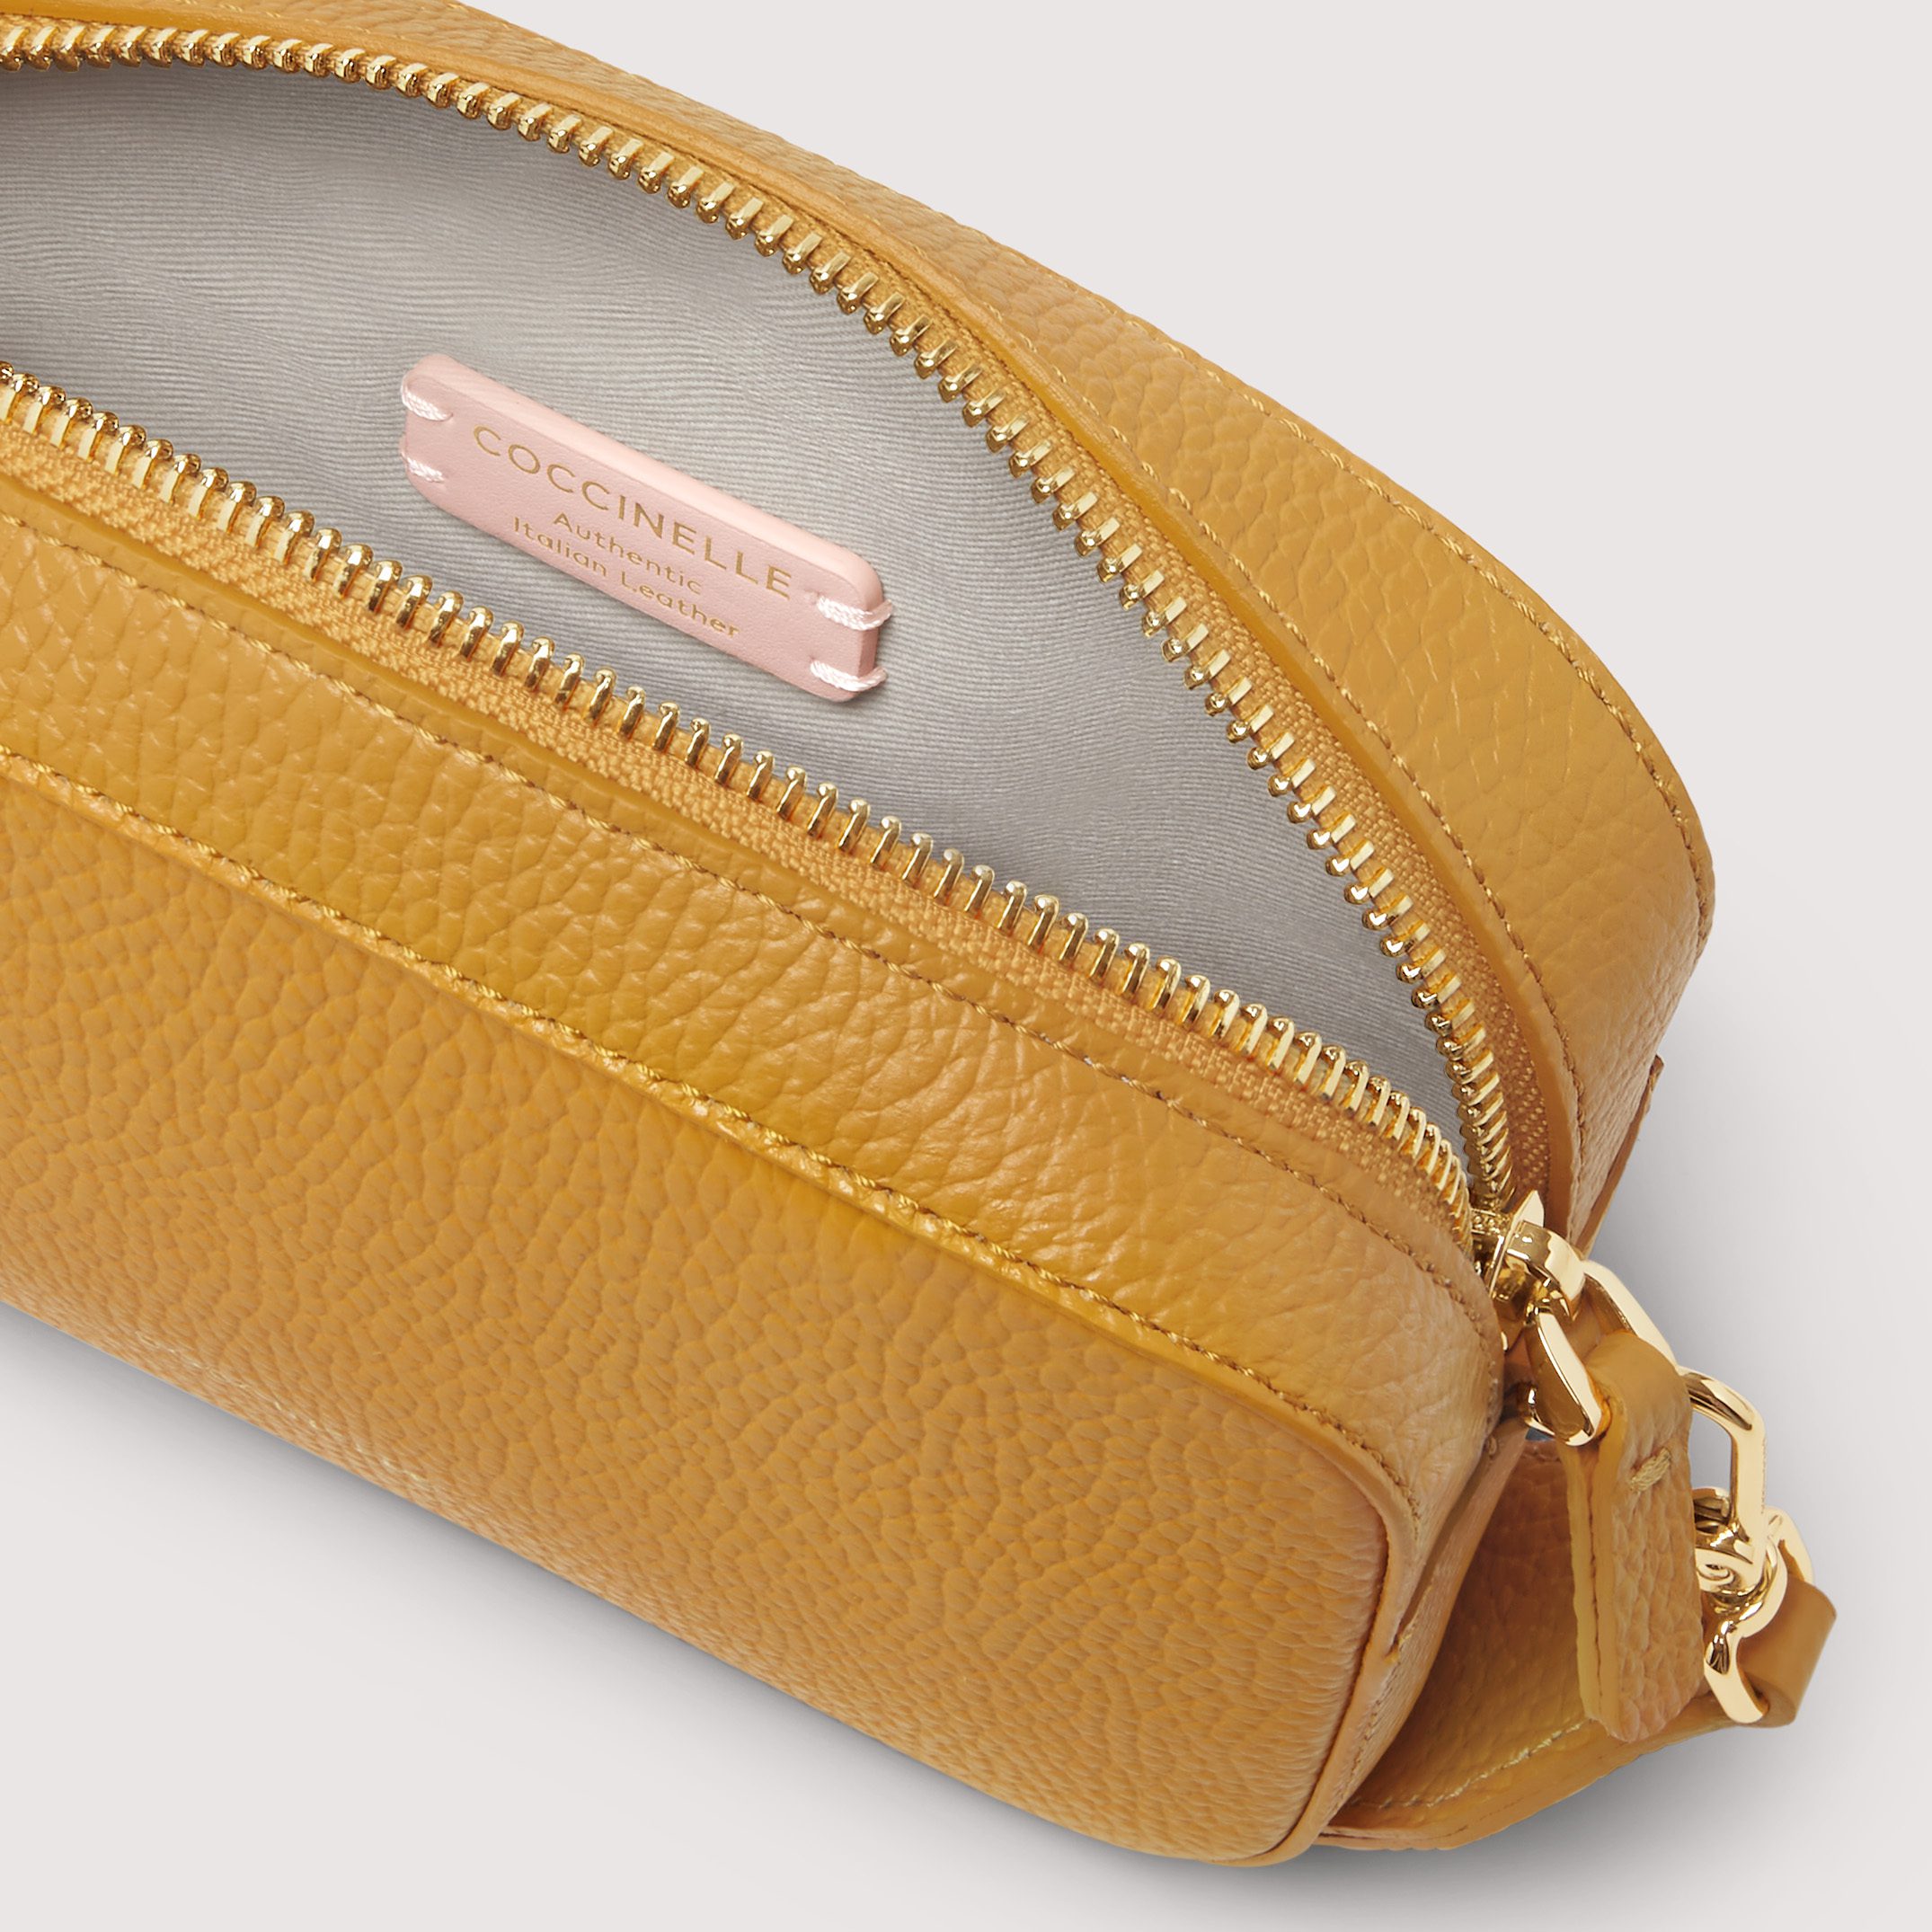 Mini bag borsa donna a tracolla in tessuto Tebe Coccinelle Resina La Borsetta Como